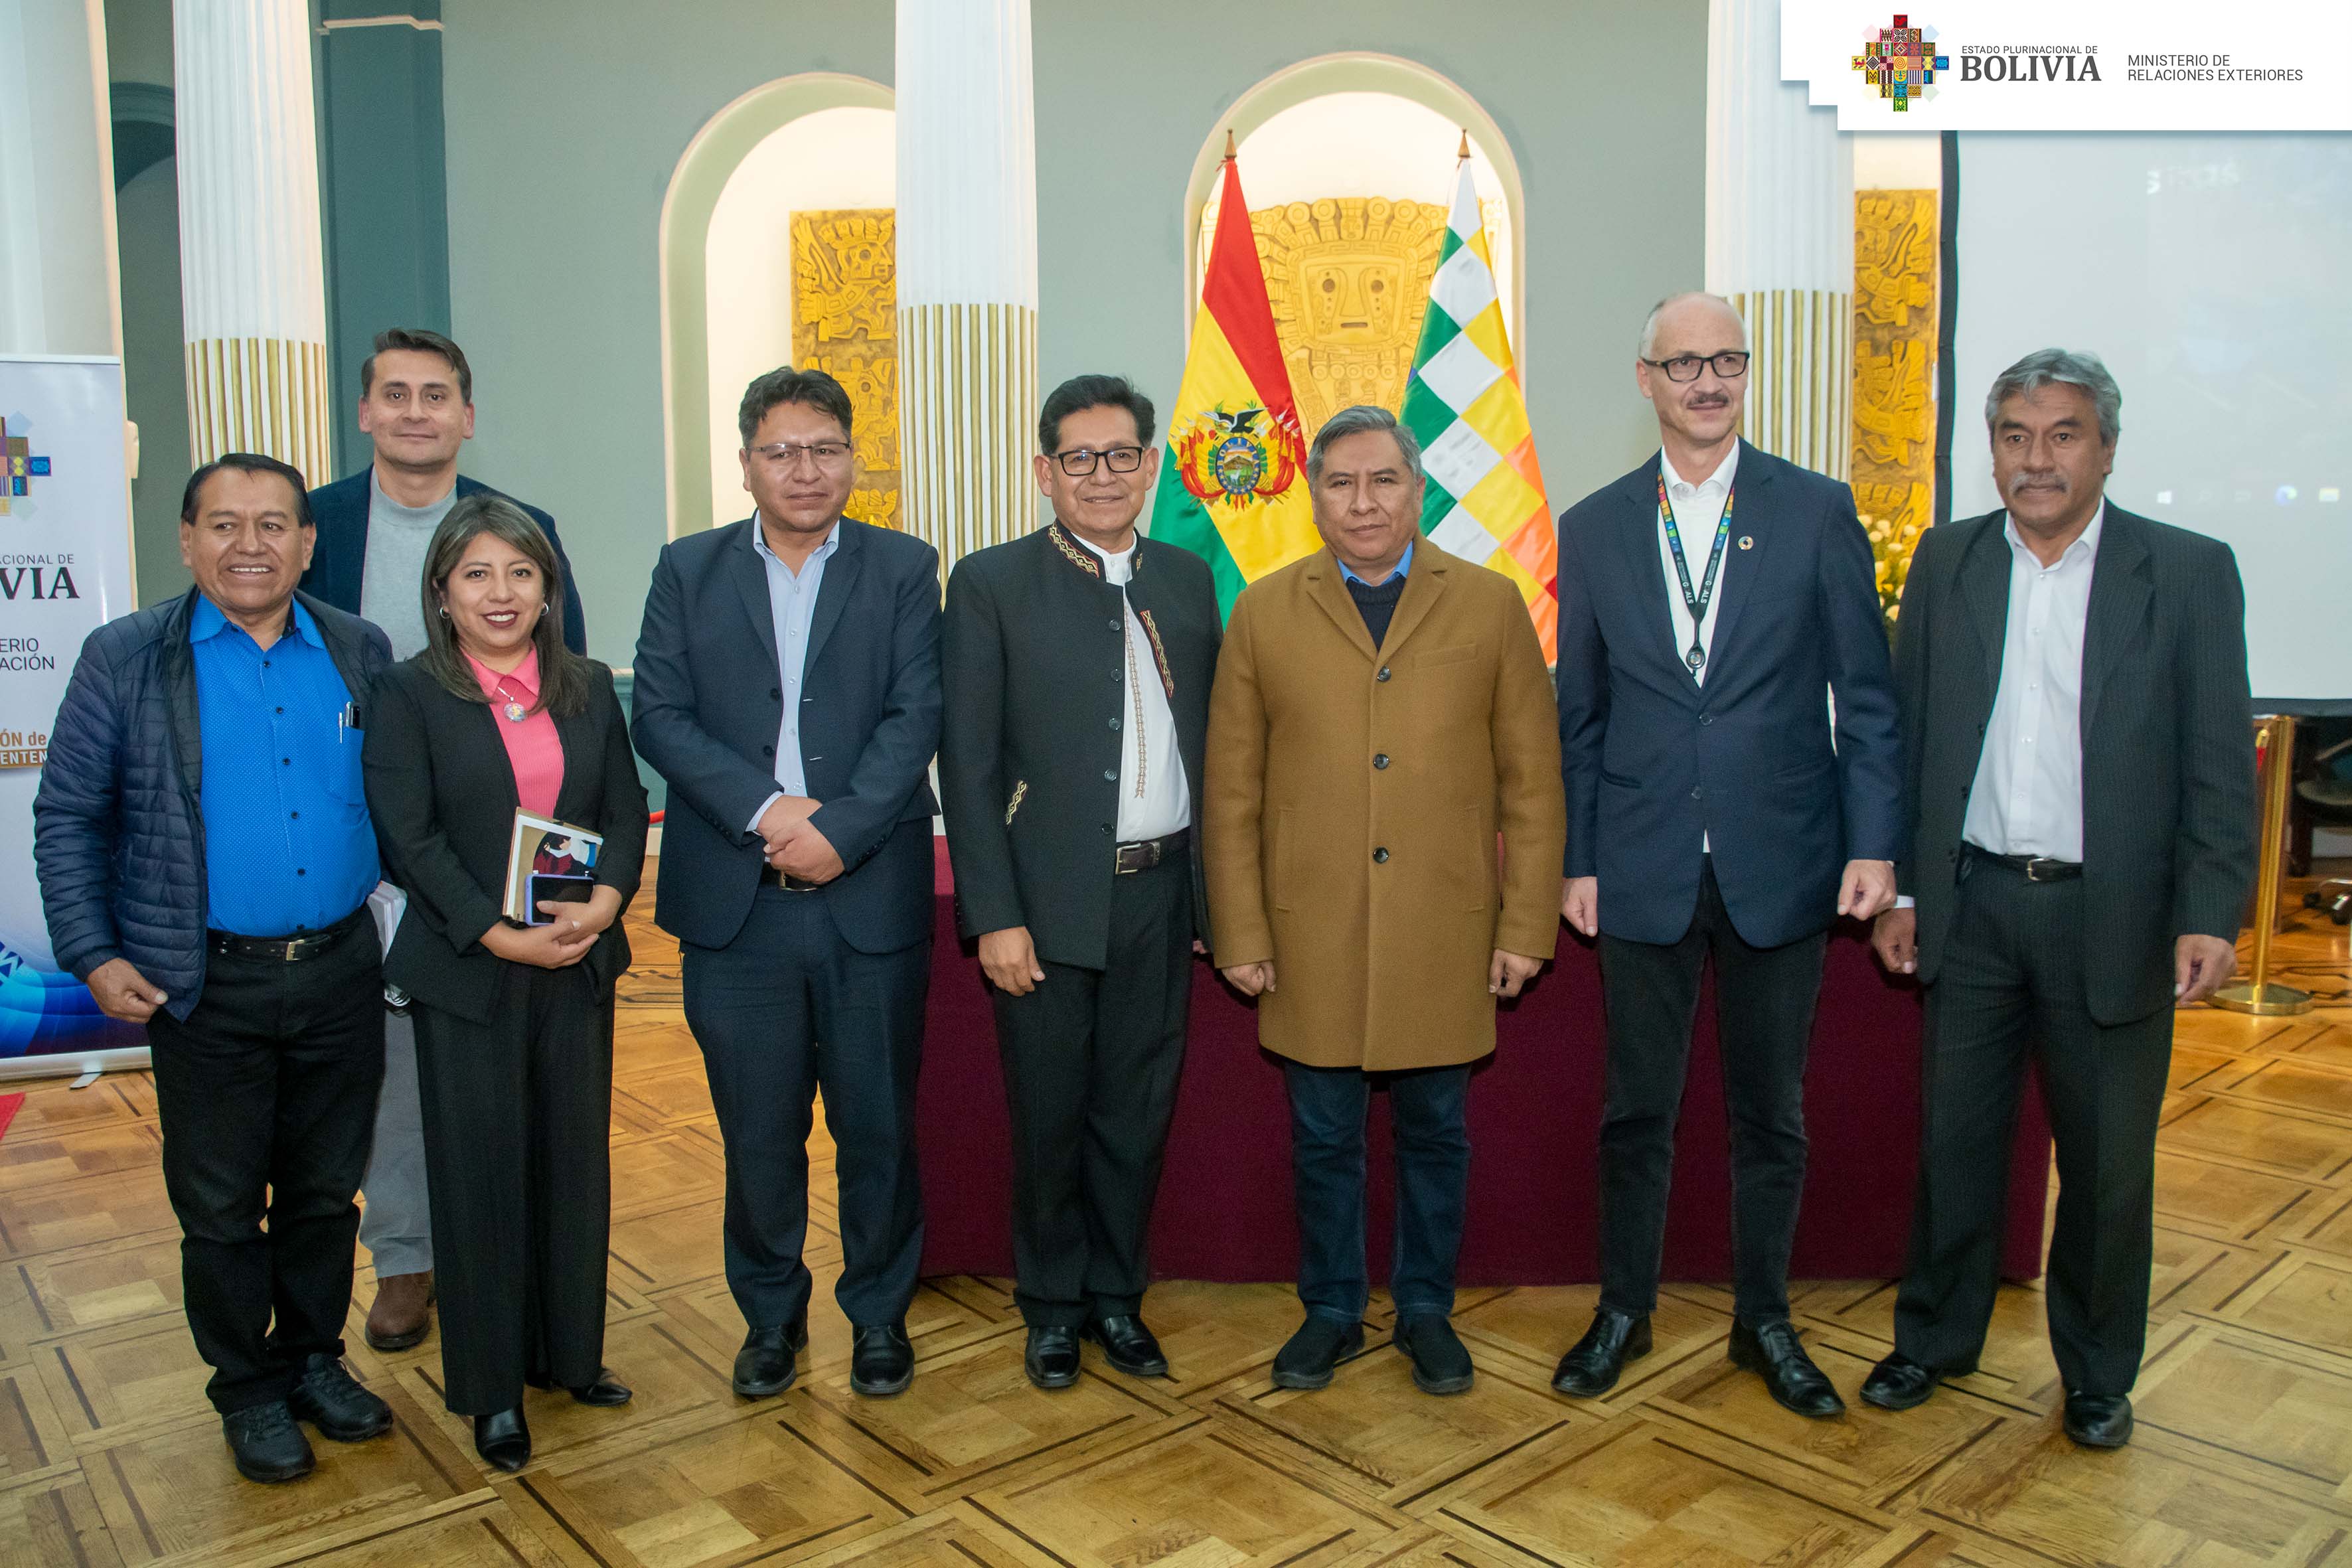 Cancillería entrega al Ministerio de Educación el sitio web de la participación de Bolivia en la Cumbre sobre la Transformación Educativa